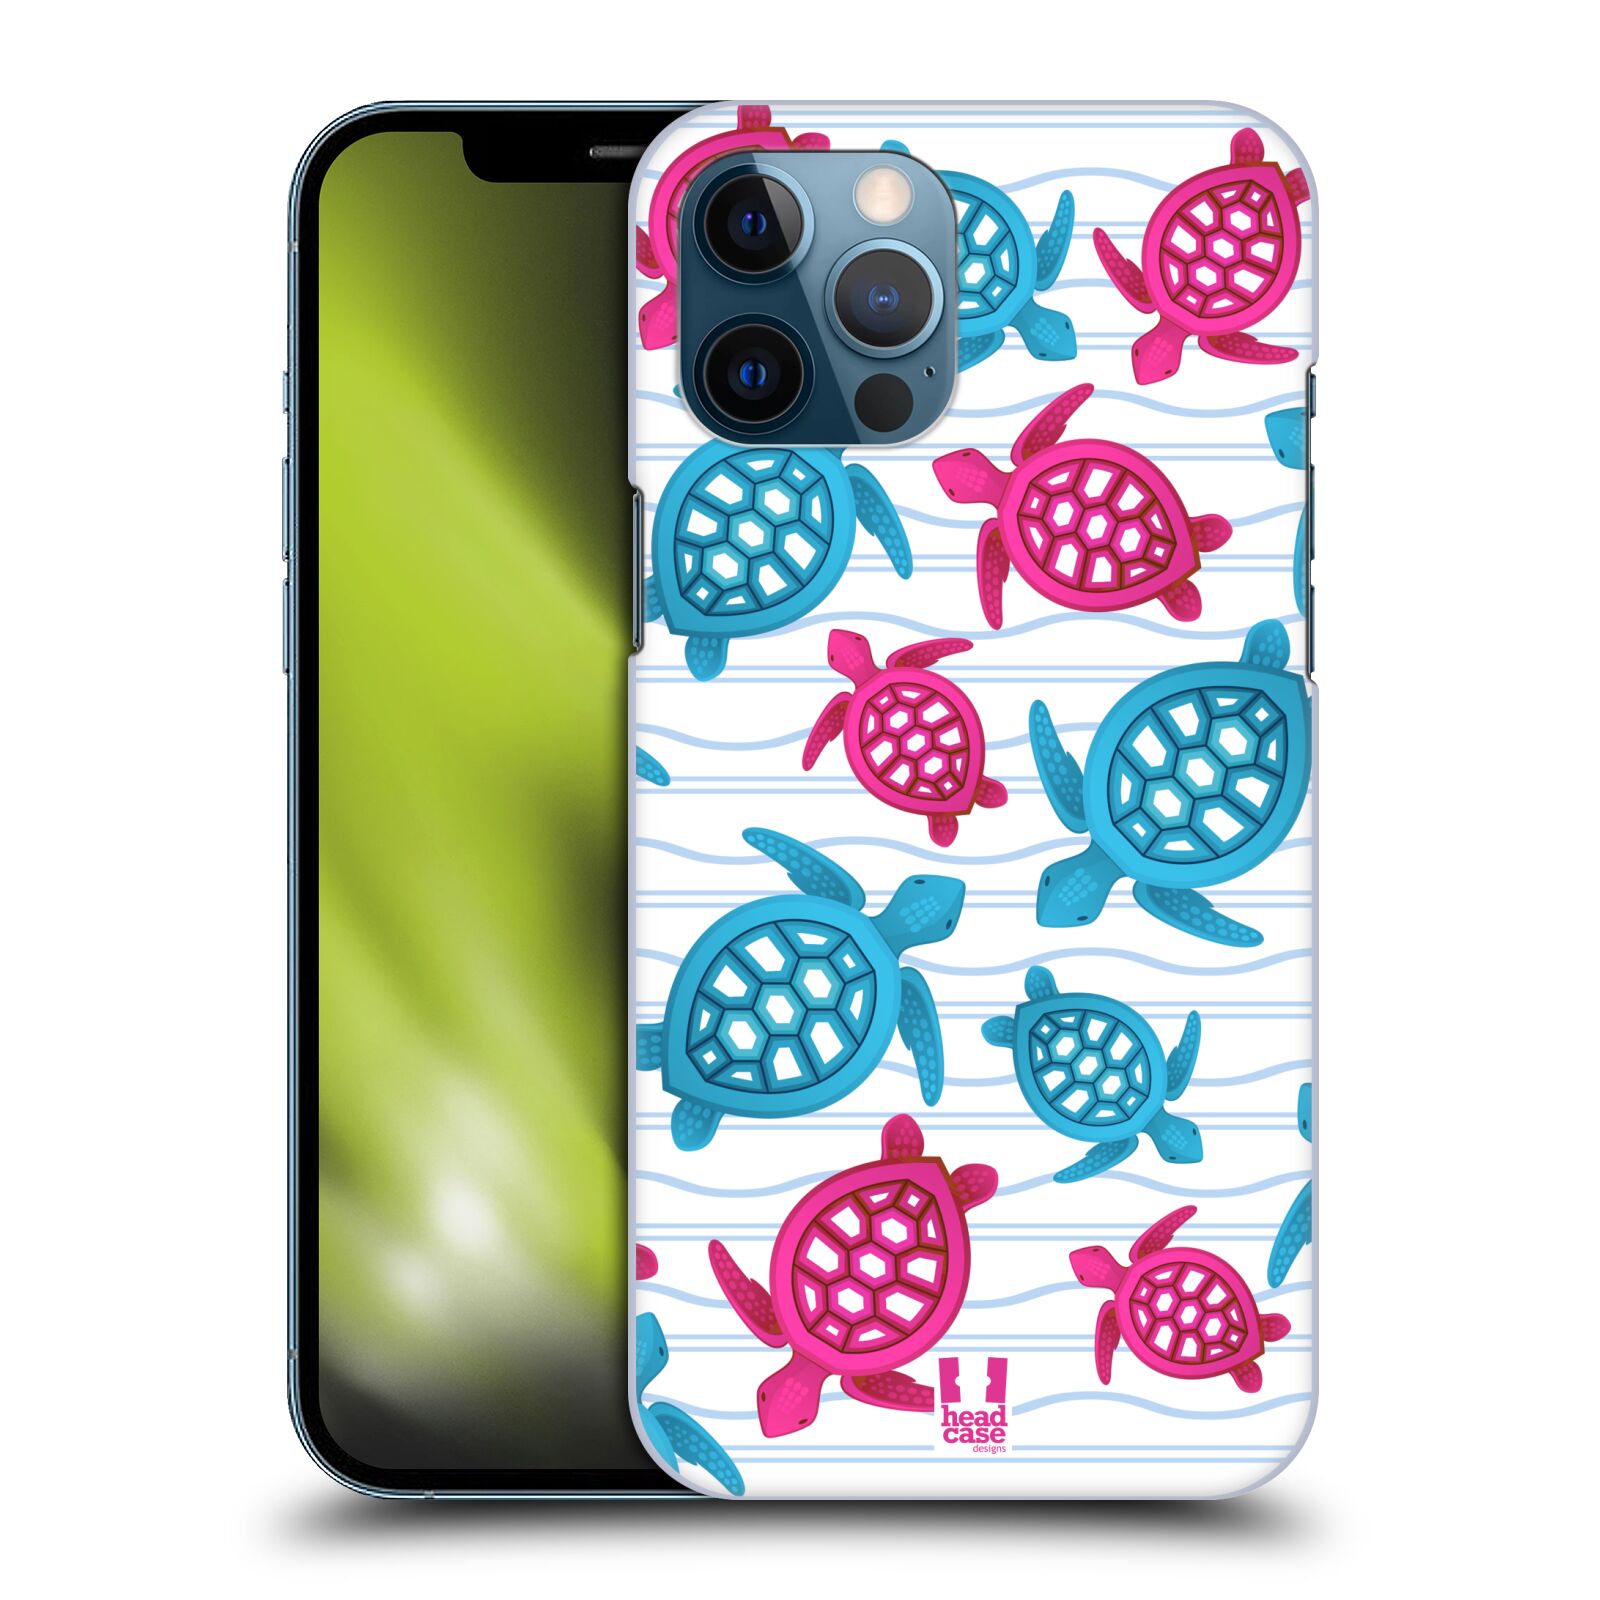 Zadní obal pro mobil Apple iPhone 12 PRO MAX - HEAD CASE - kreslený mořský vzor želvičky